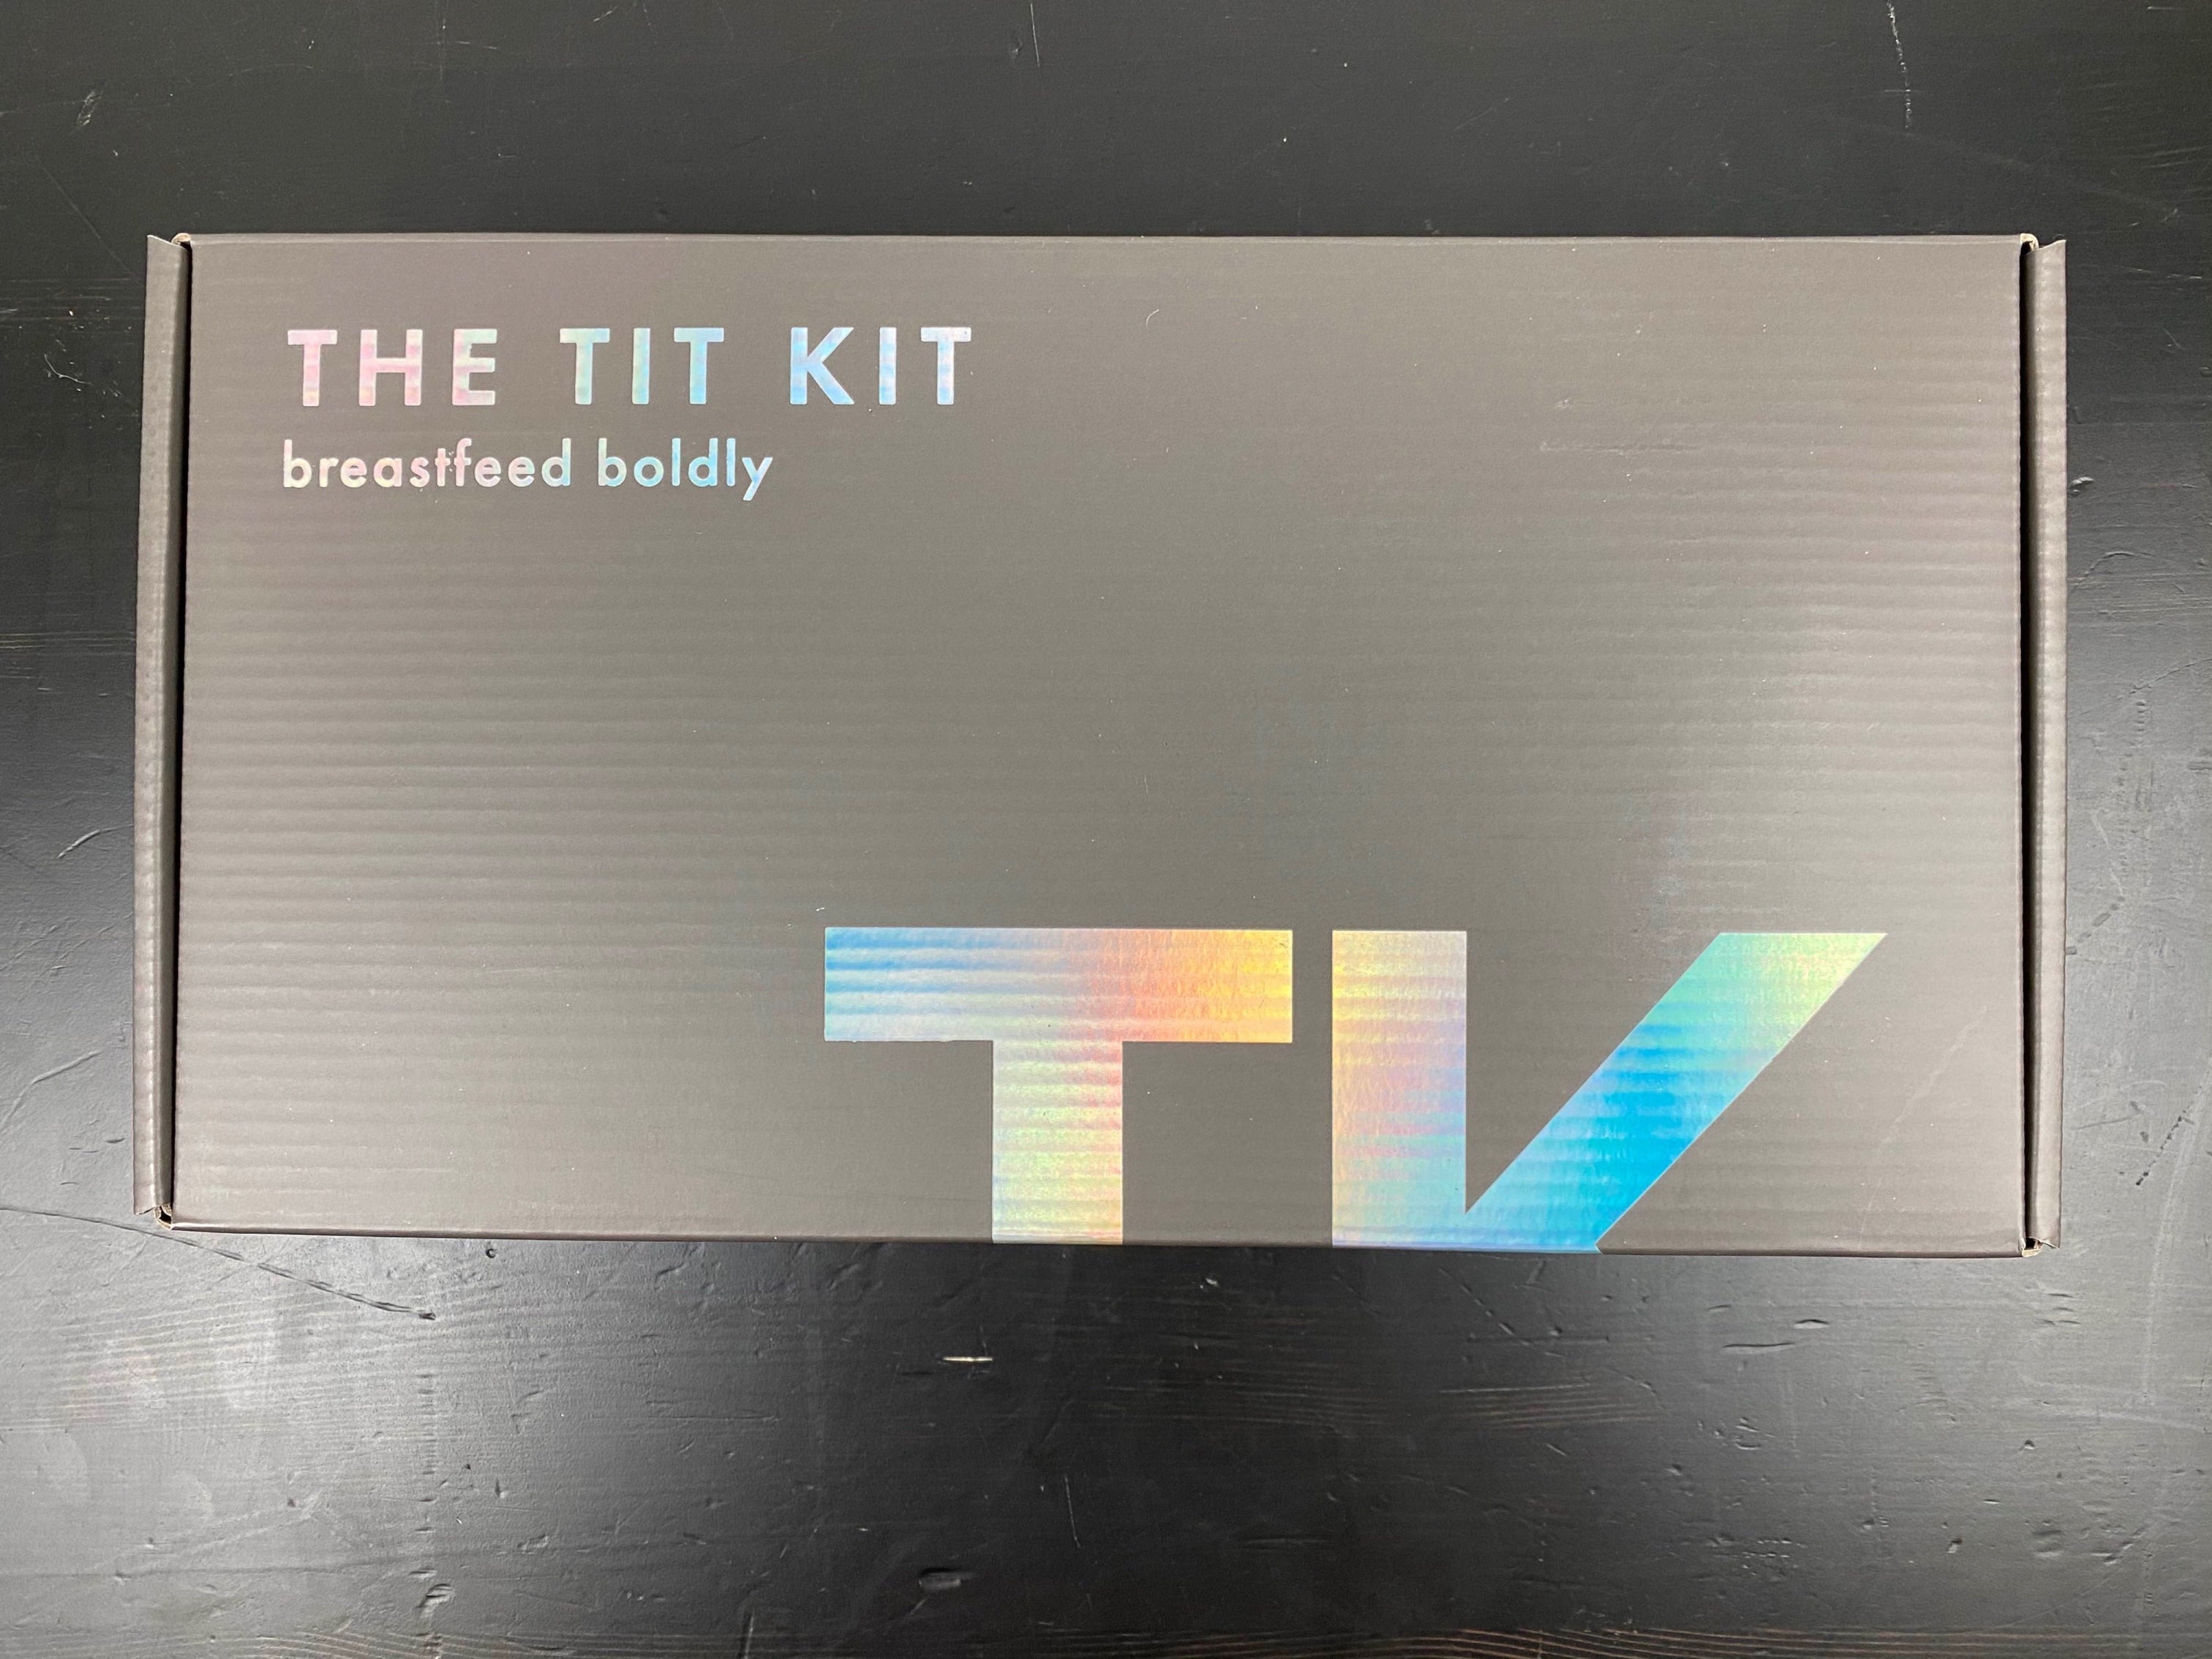 THE TIT KIT - THE TIT KIT